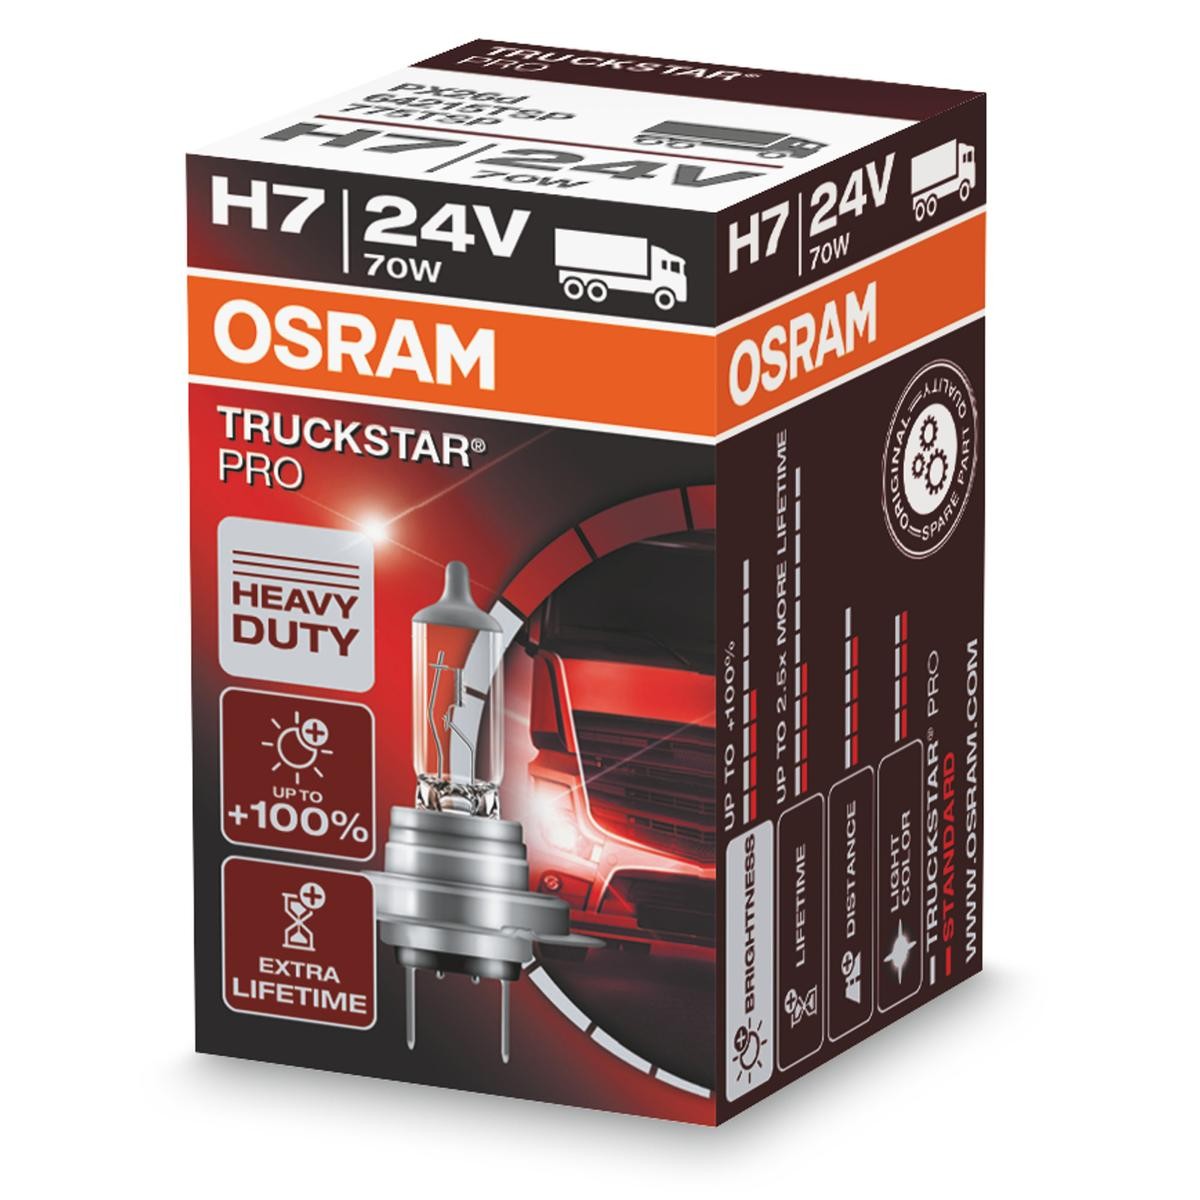 H7 OSRAM TRUCKSTAR PRO H7 24V 70W PX26d, Halogen High beam bulb 64215TSP buy